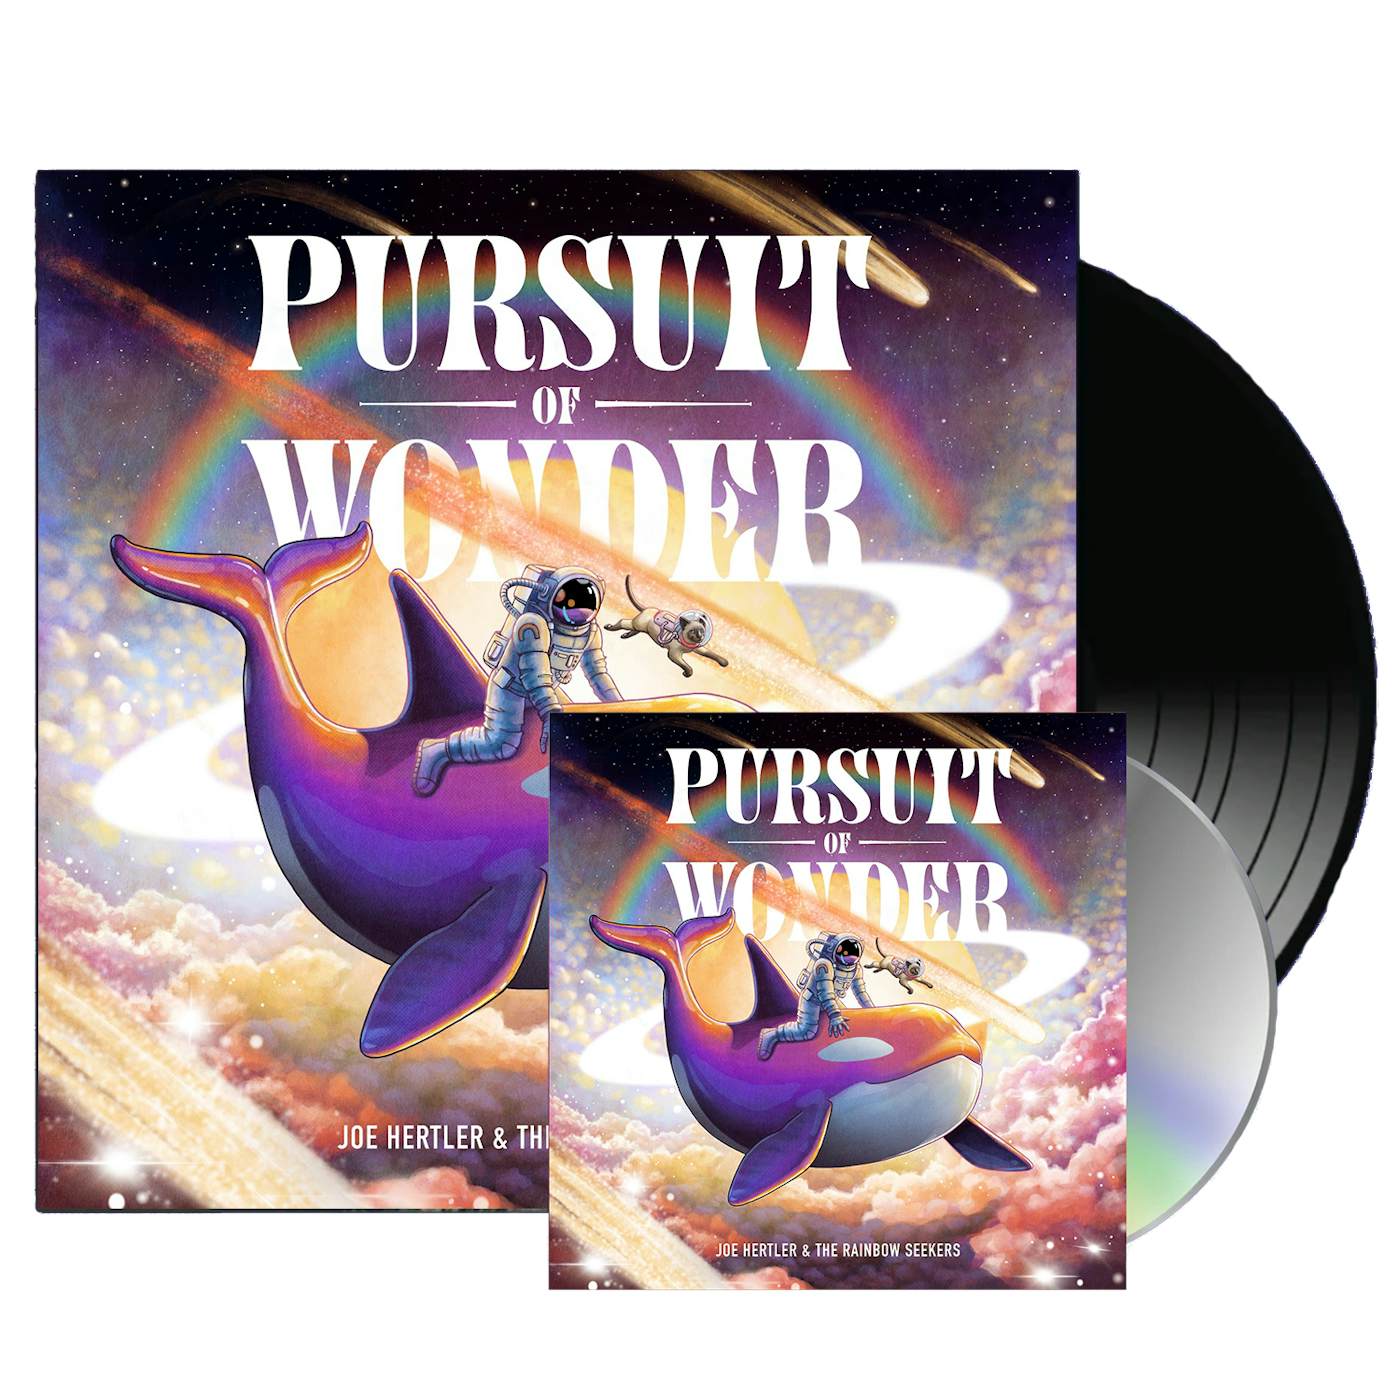 Joe Hertler & The Rainbow Seekers [Pre-Order] Pursuit of Wonder Album Bundle (CD + Vinyl Package)